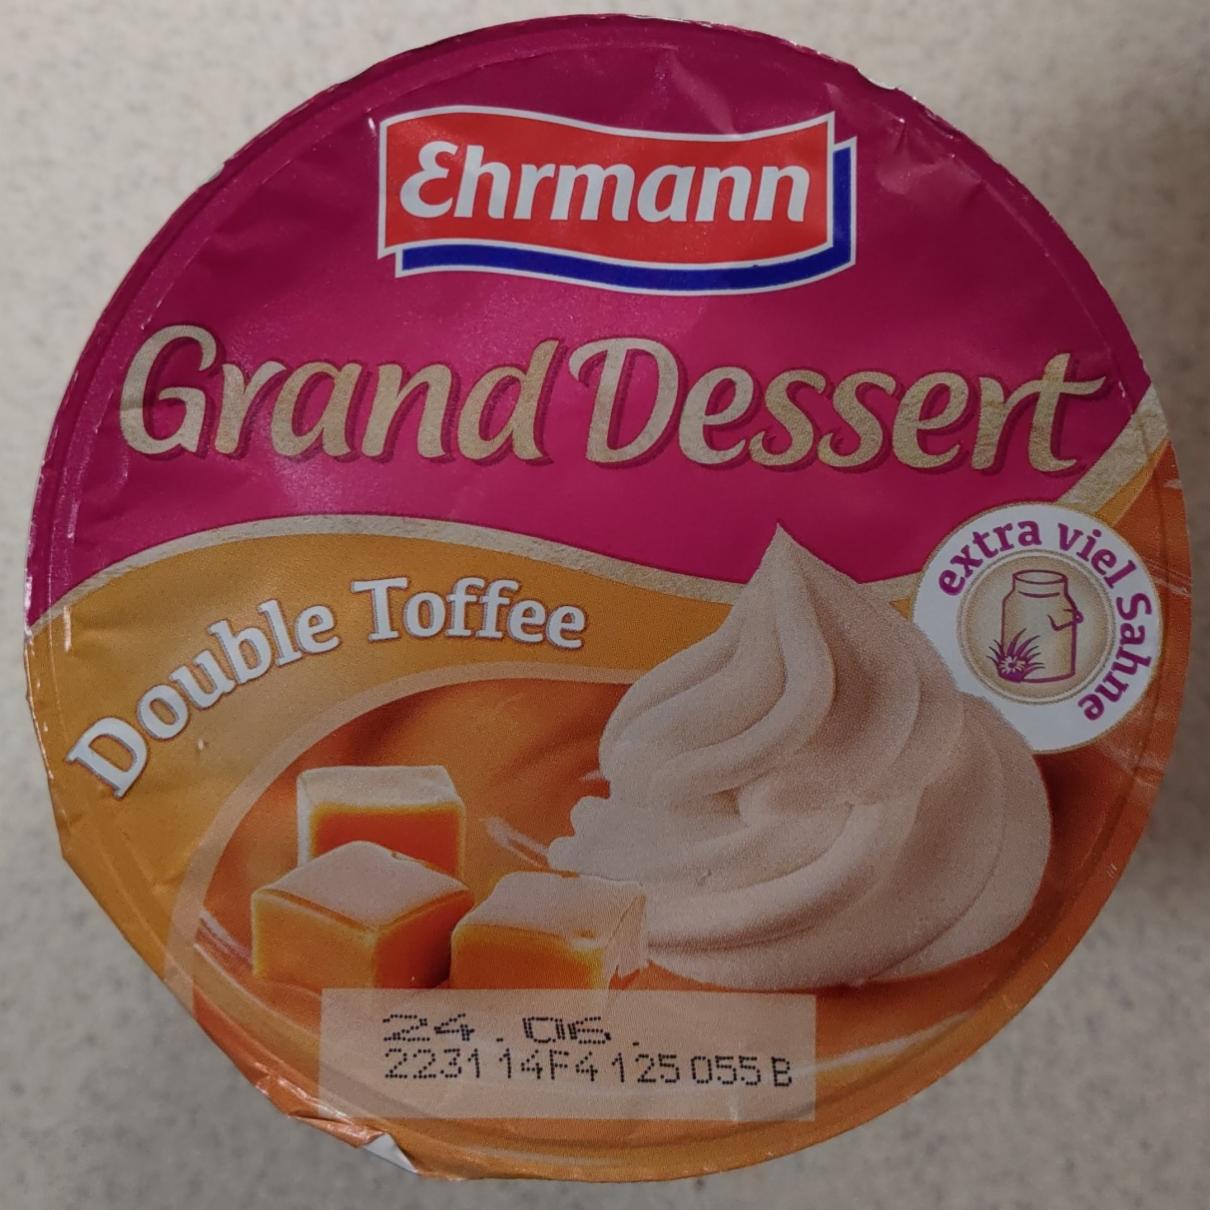 Fotografie - Grand Dessert Double Toffee Ehrmann